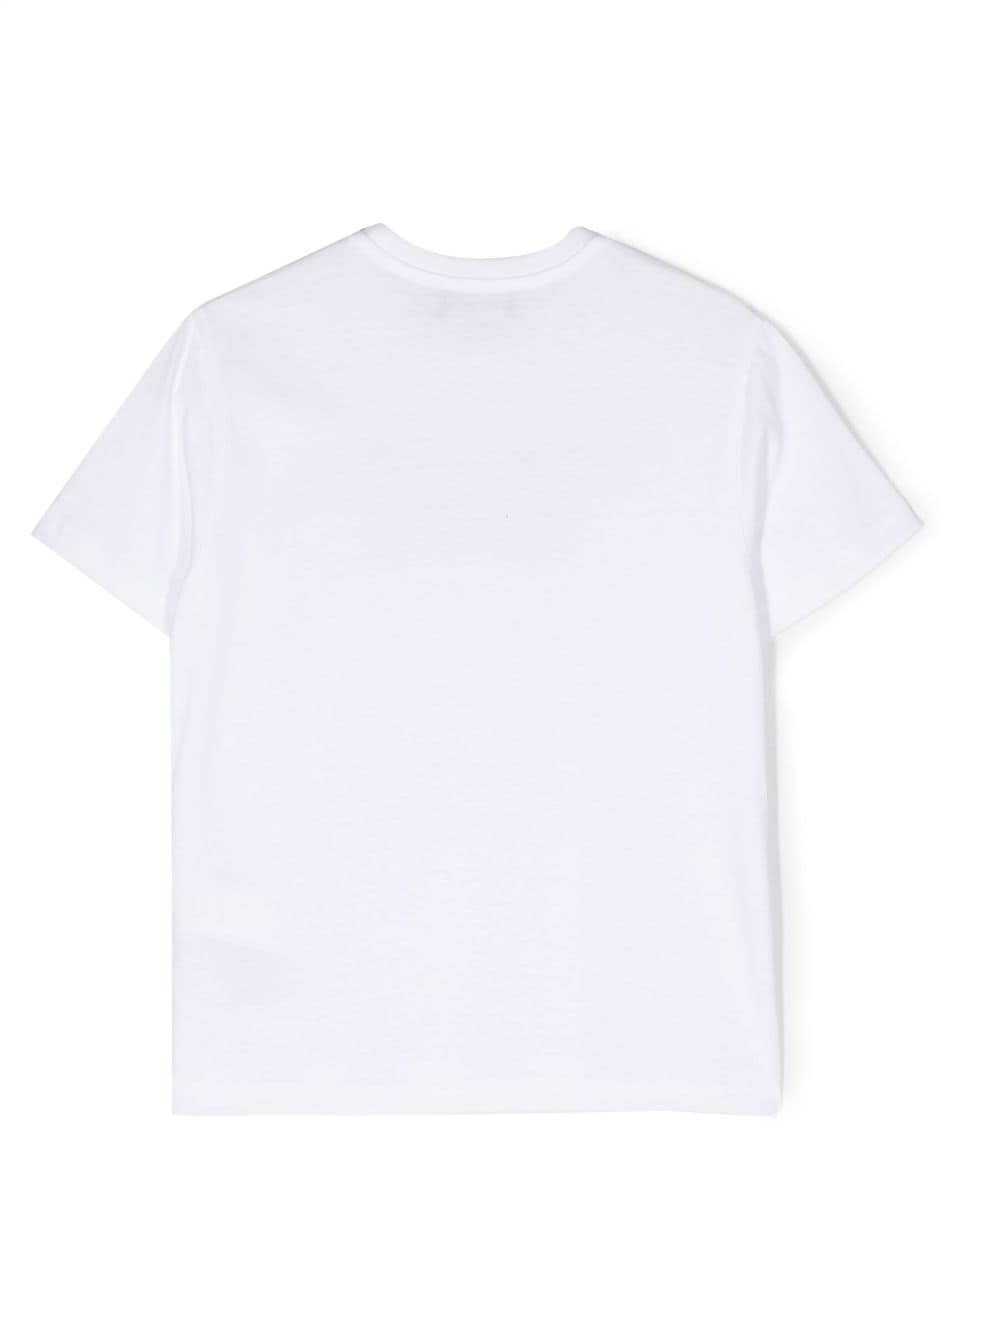 T-shirt bianca per bambino con stampa